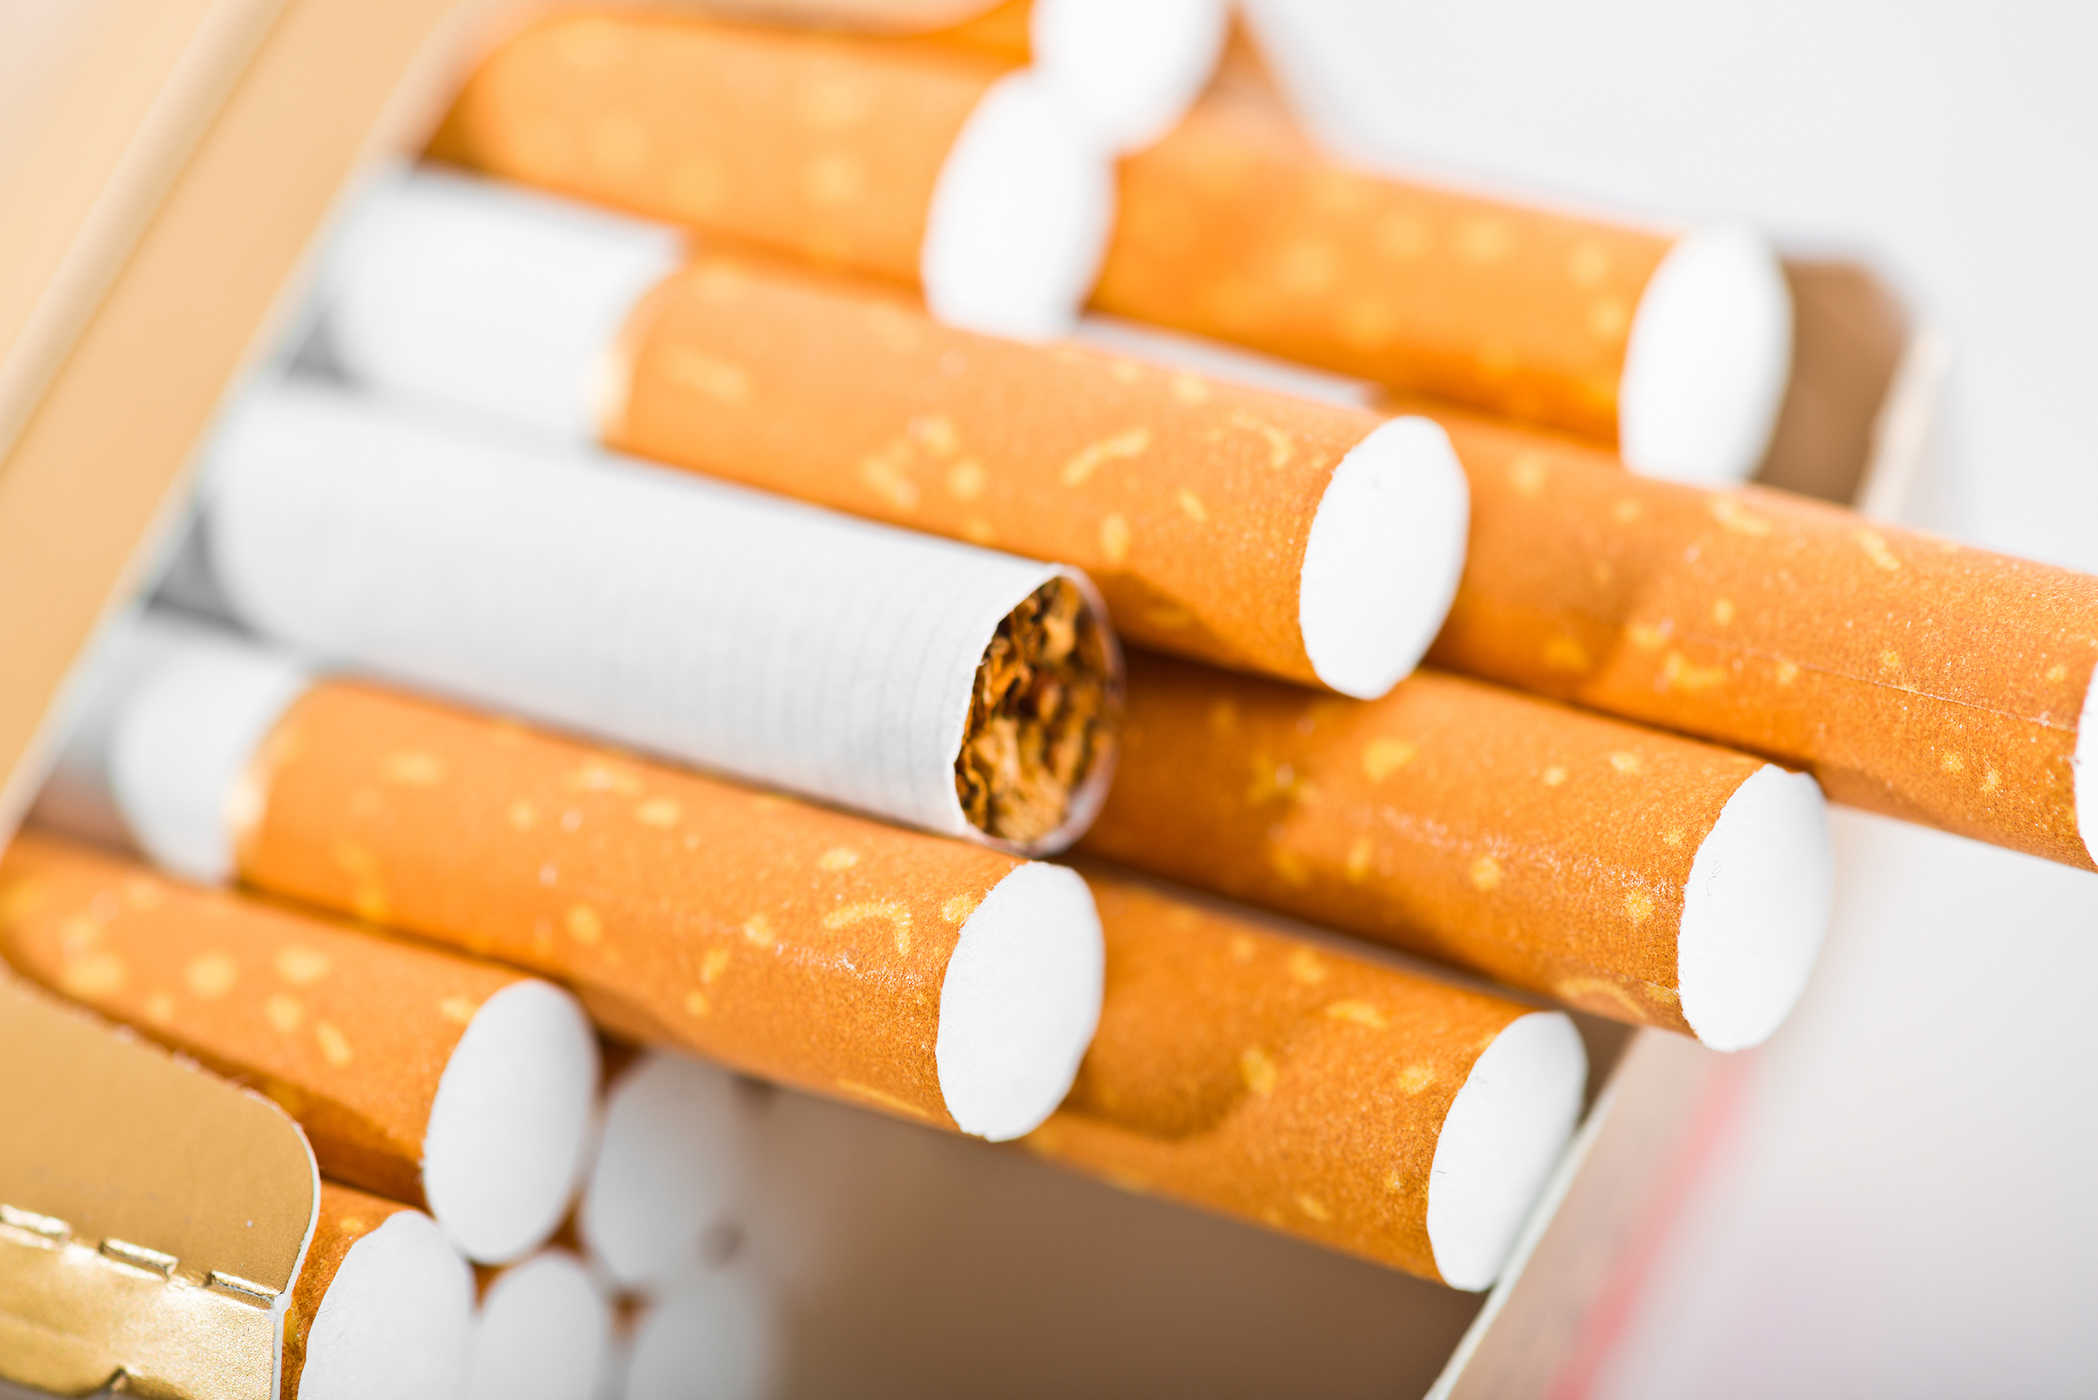 Cần đáp ứng những điều kiện gì để được bán thuốc lá?